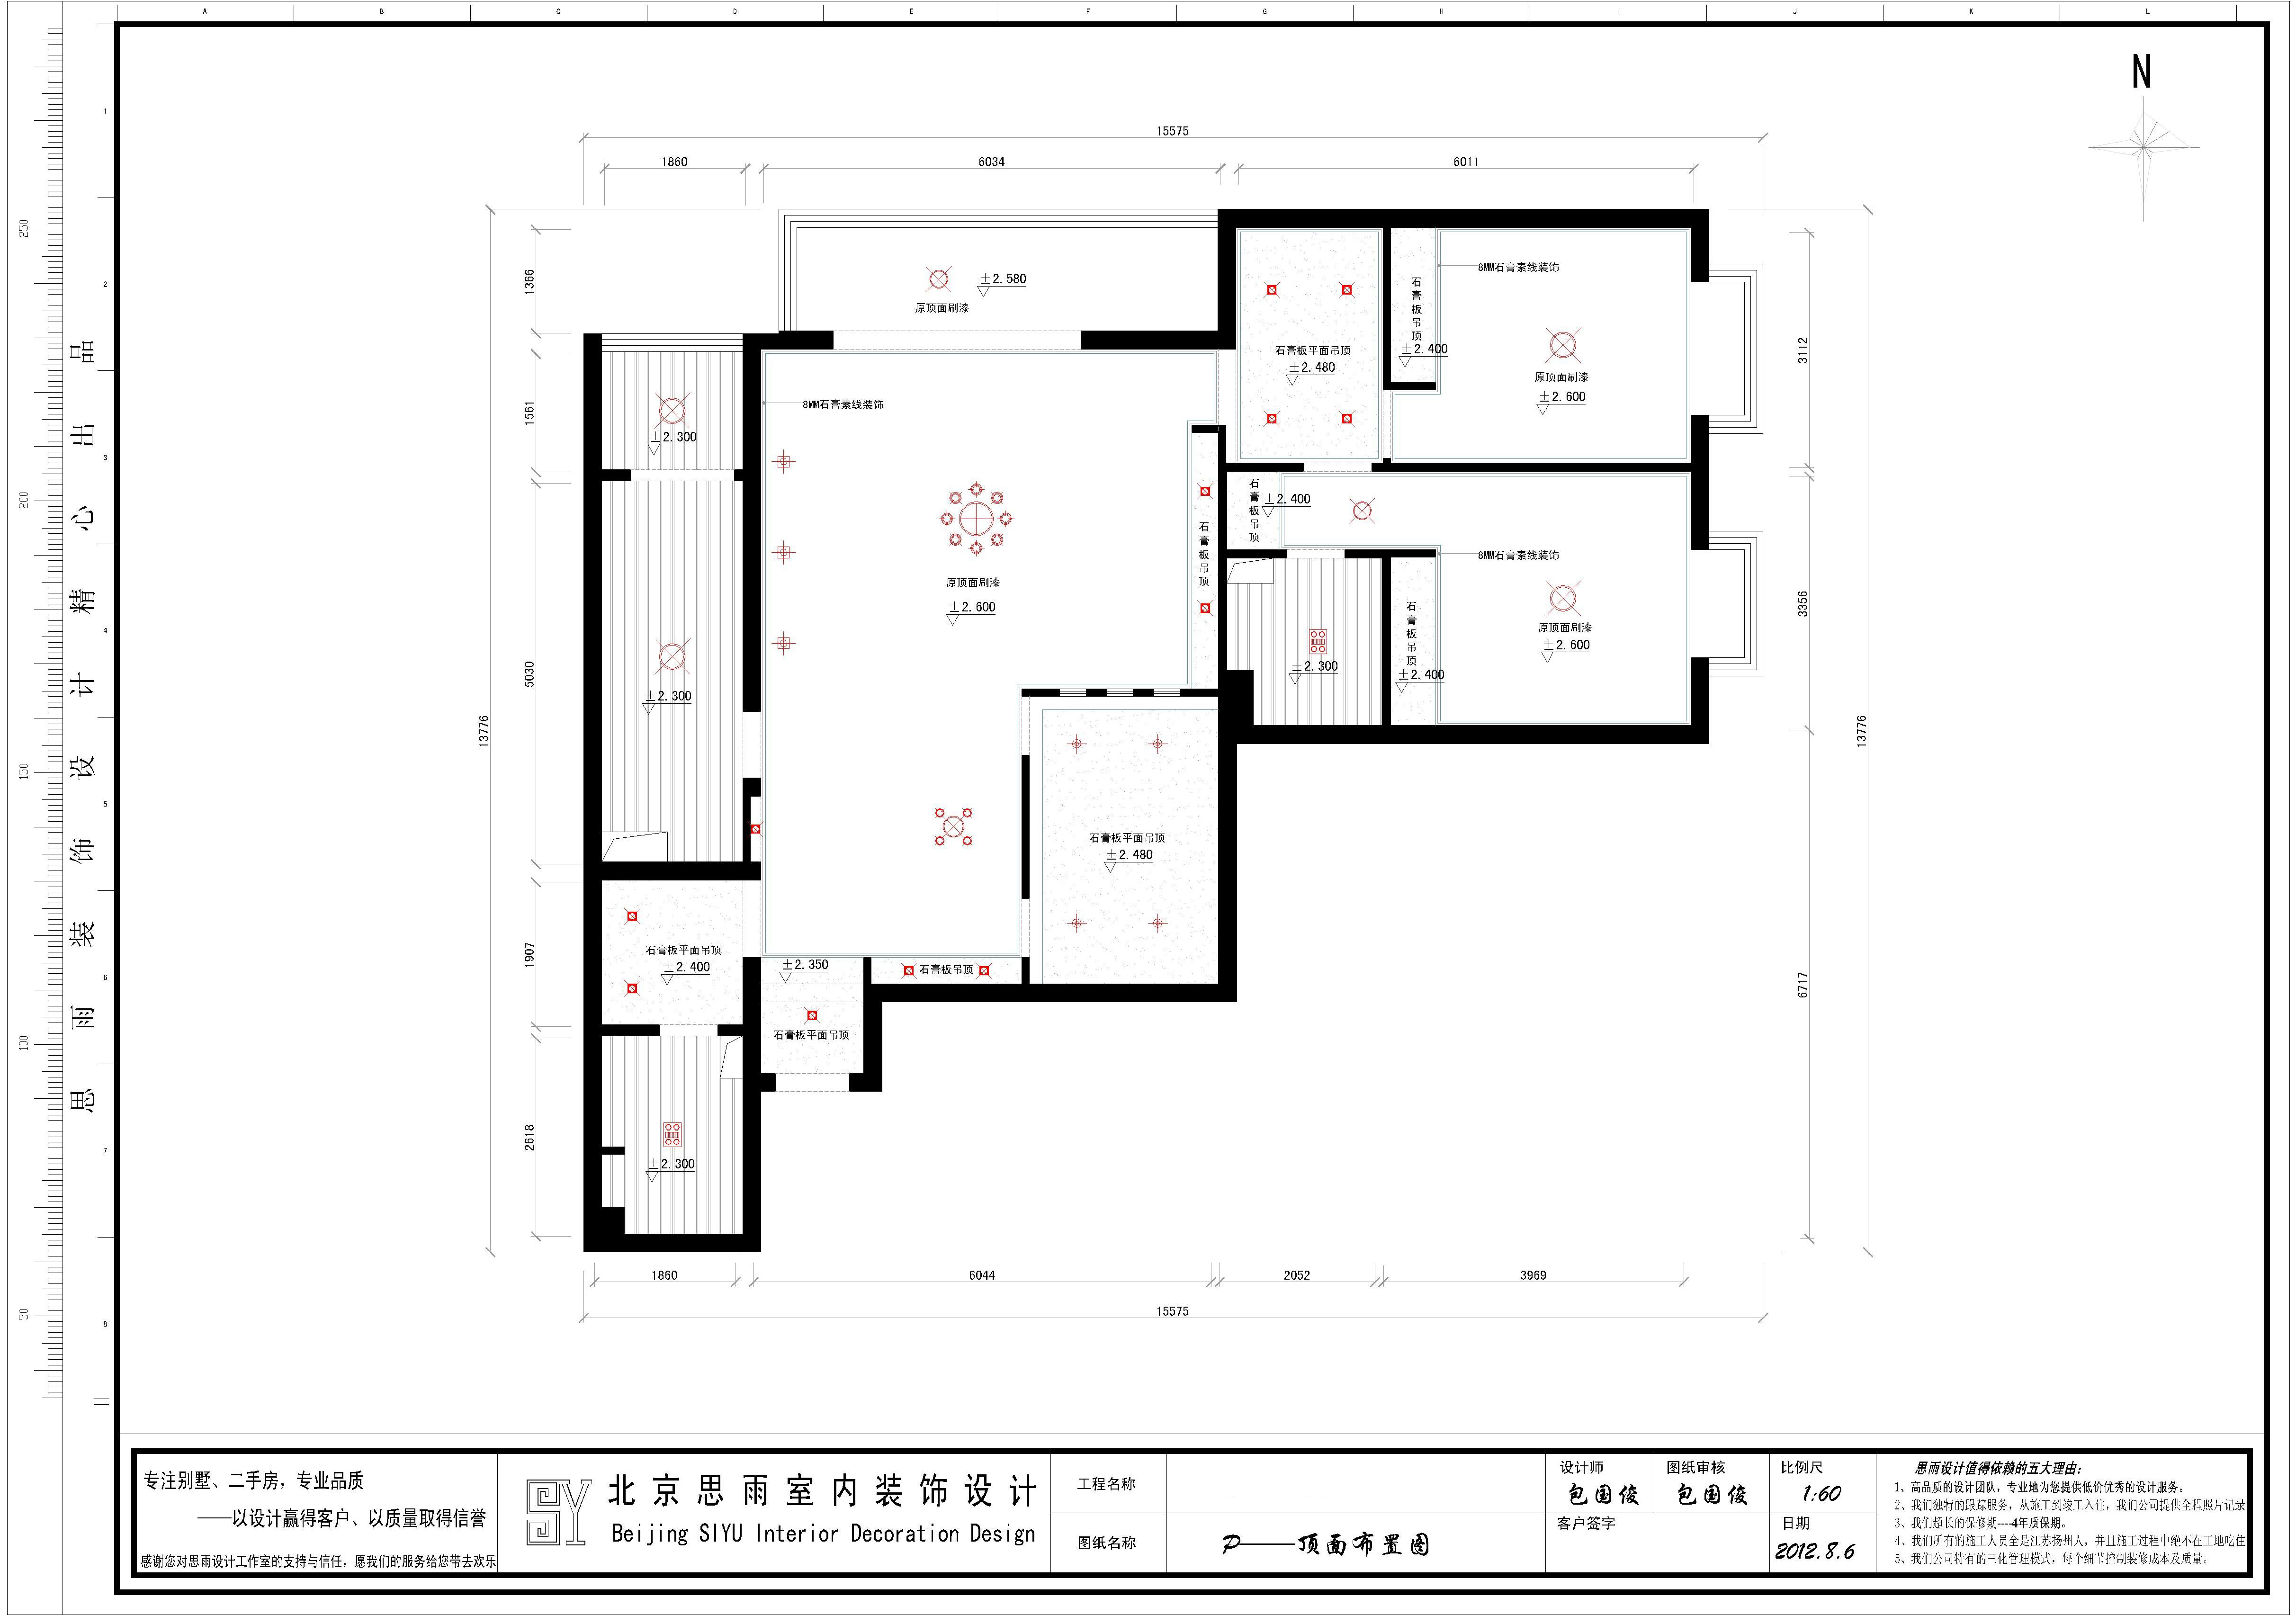 思雨易居 扬州建筑 扬州逅屋 逅屋设计 北京二手房 户型图图片来自思雨易居设计-包国俊在《时髦空间》设计方案汇报的分享